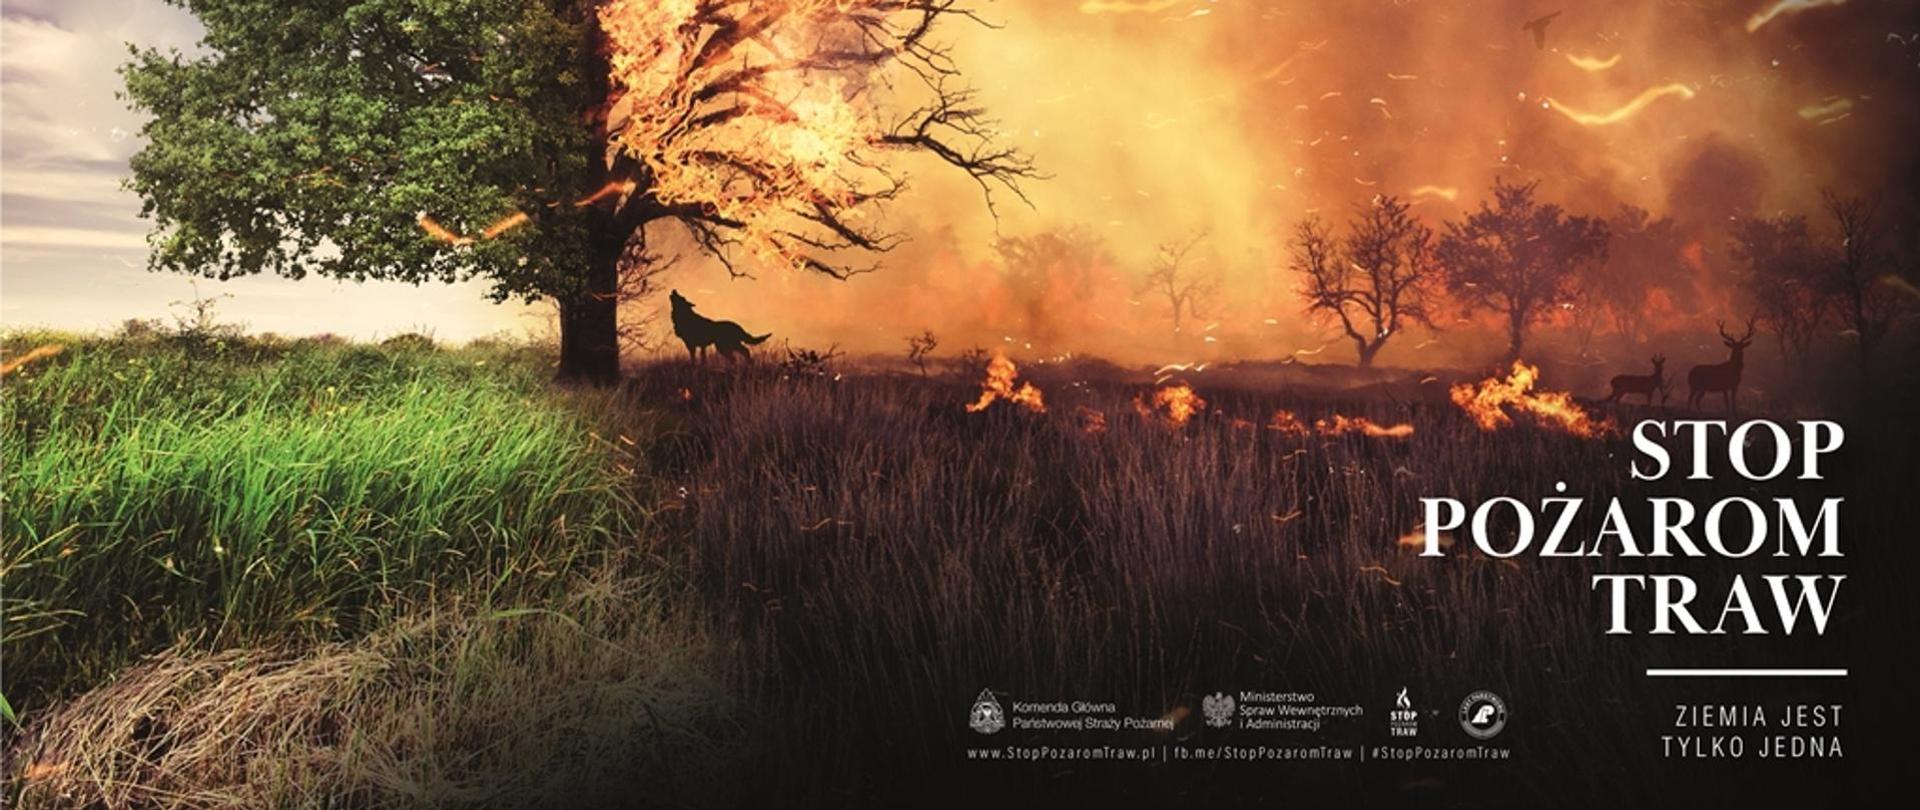 Obraz przedstawia jeden z materiałów informacyjnych kampanii „STOP POŻAROM TRAW”!!! Prawa część ilustracji przedastwia obszar objęty pożarem, w którym znajdują sę zwierzęta